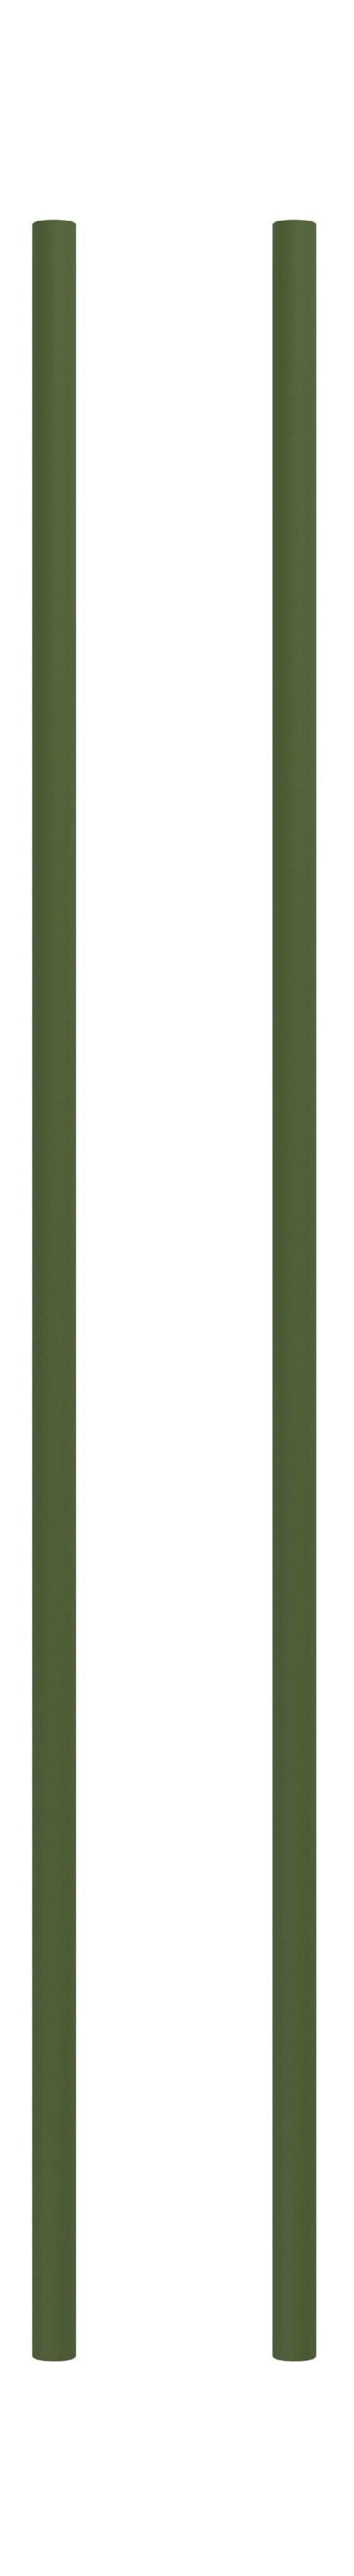 Sistema de estantería Moebe/Pierna de estantería de pared 85 cm de pino verde, conjunto de 2